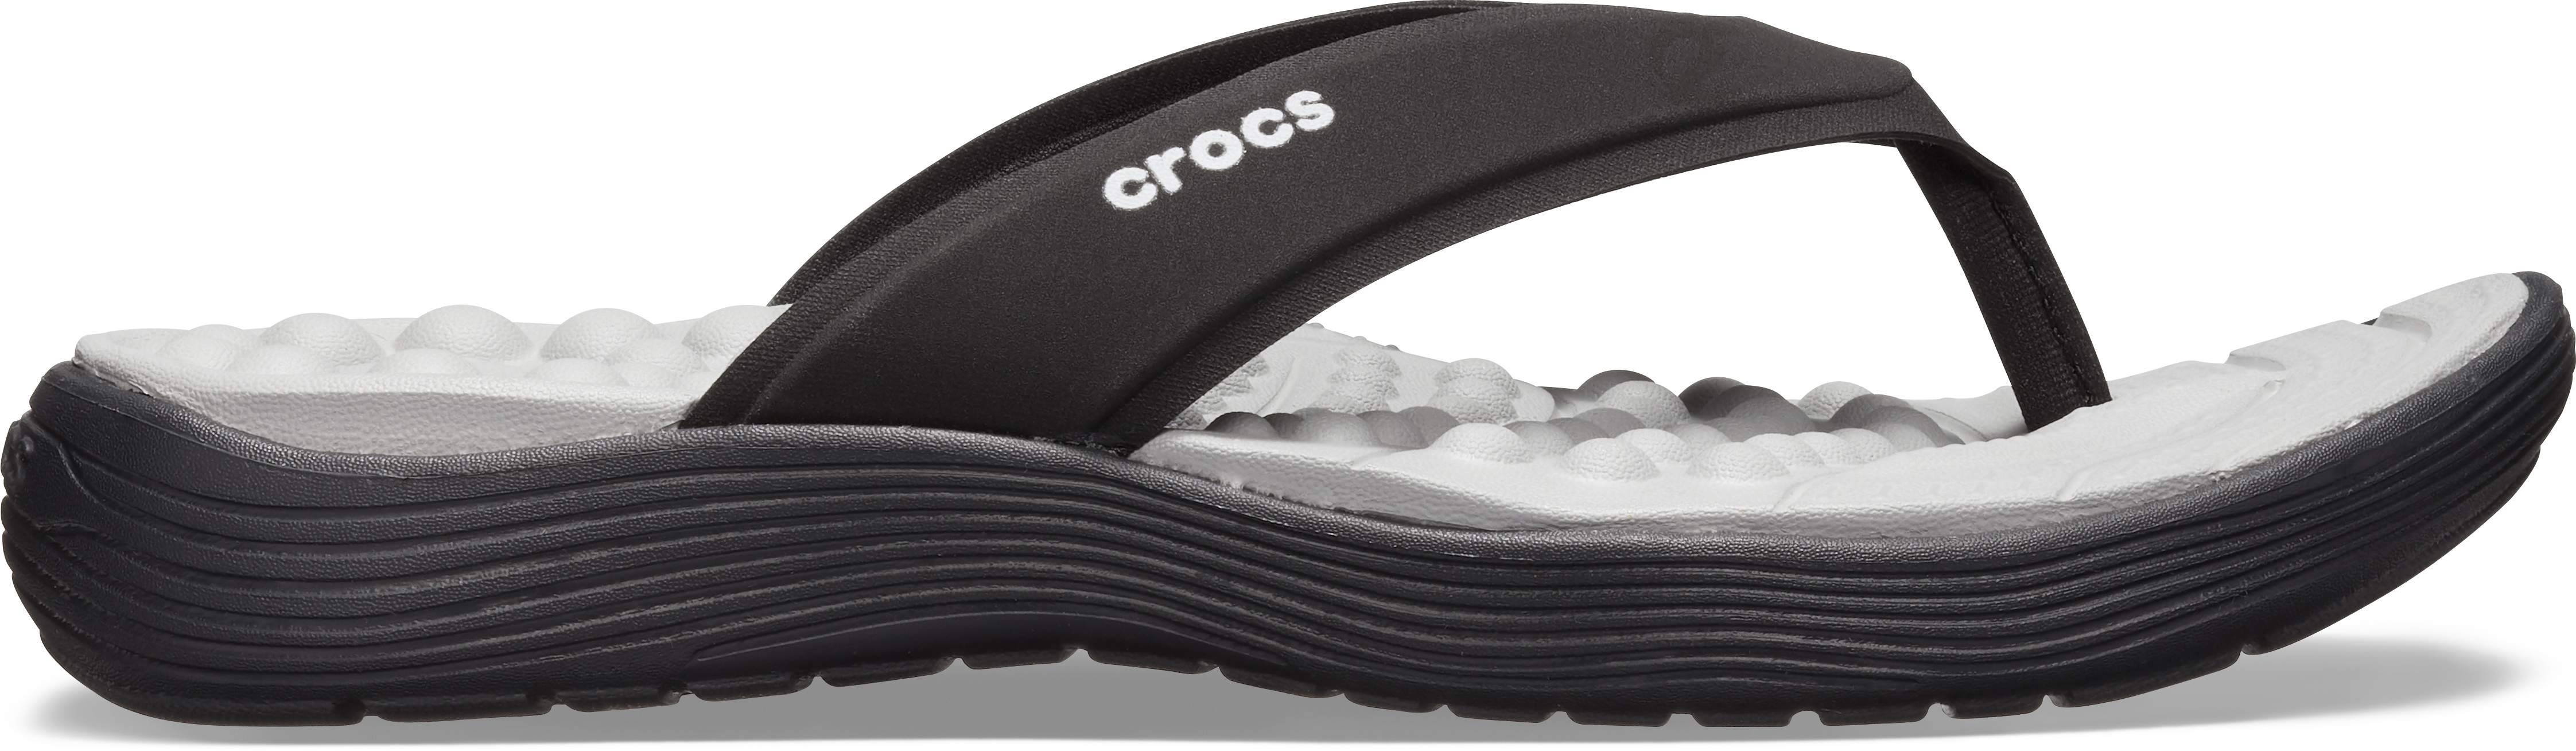 women's white croc sandals